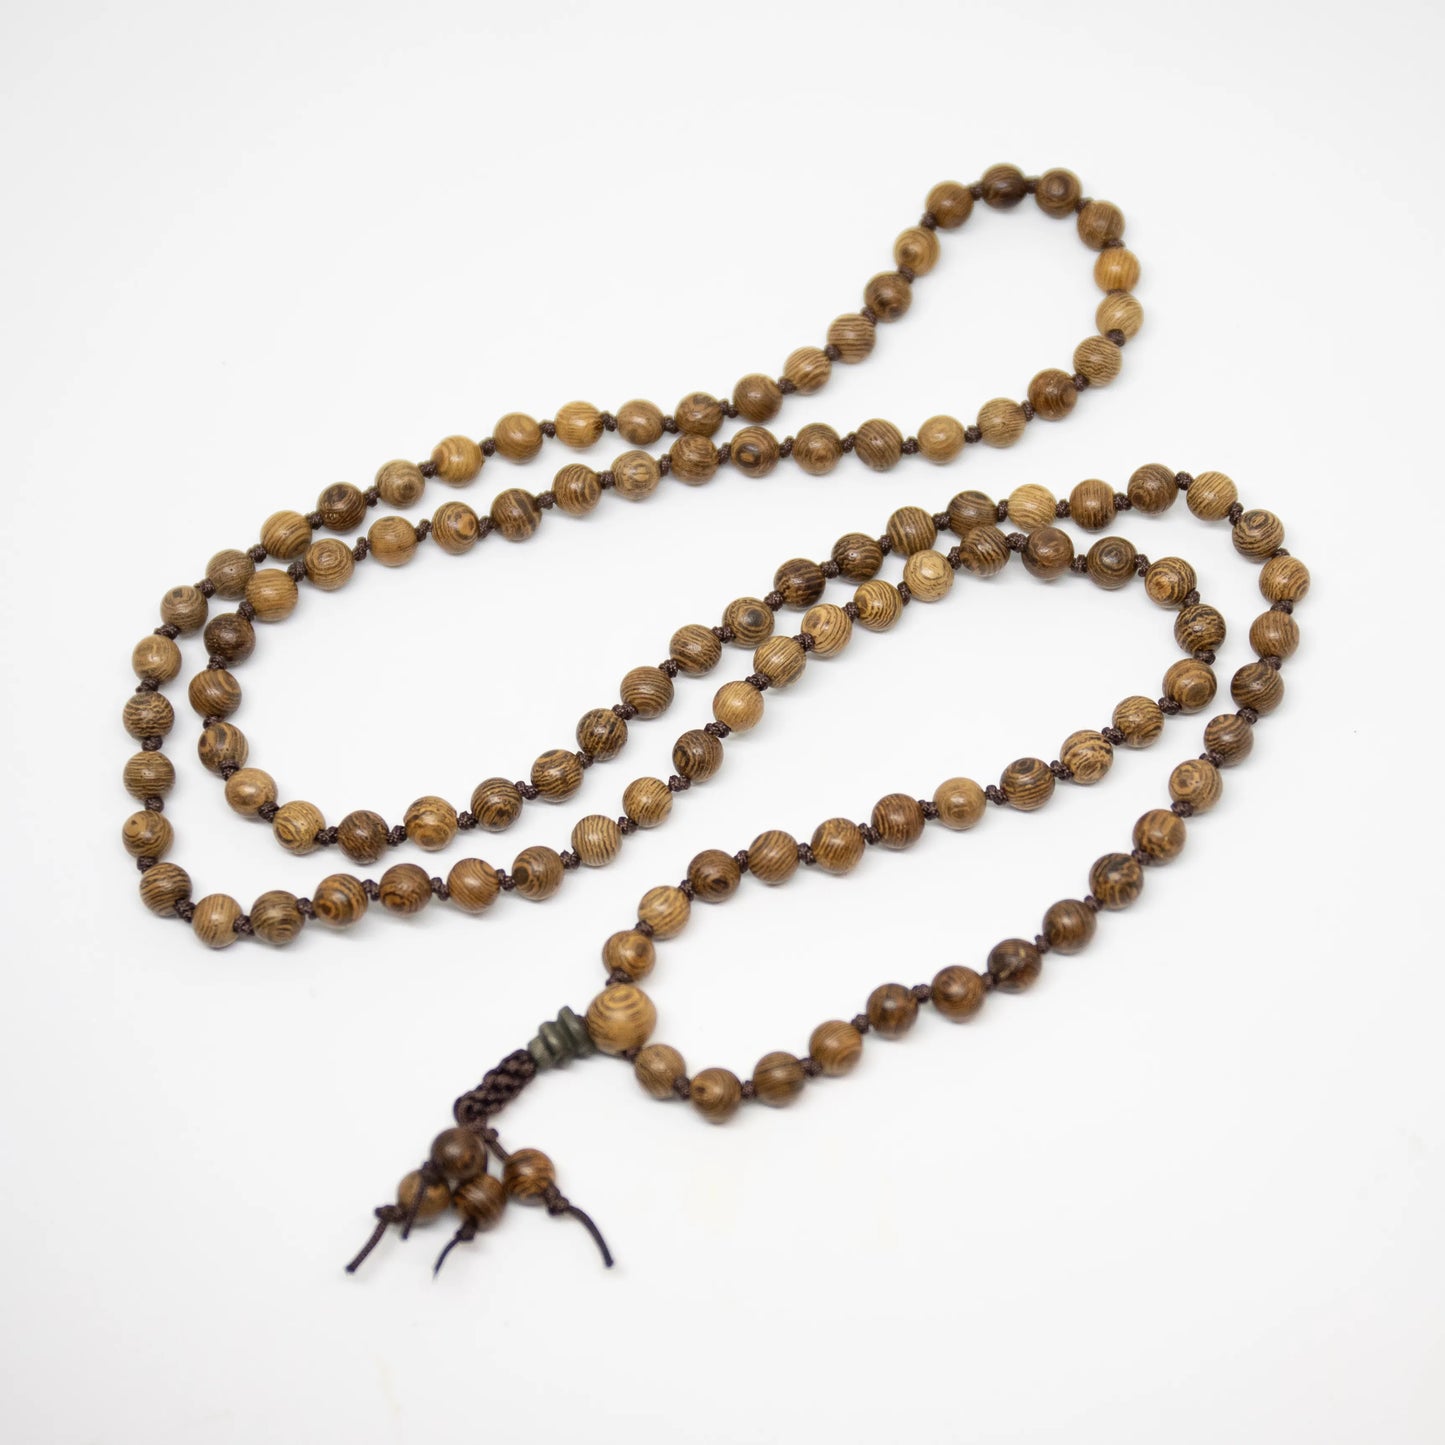 Phoenix Tail Wood Knotted 108 Bead Mala - Prayer Beads - 8mm (2 Pack)